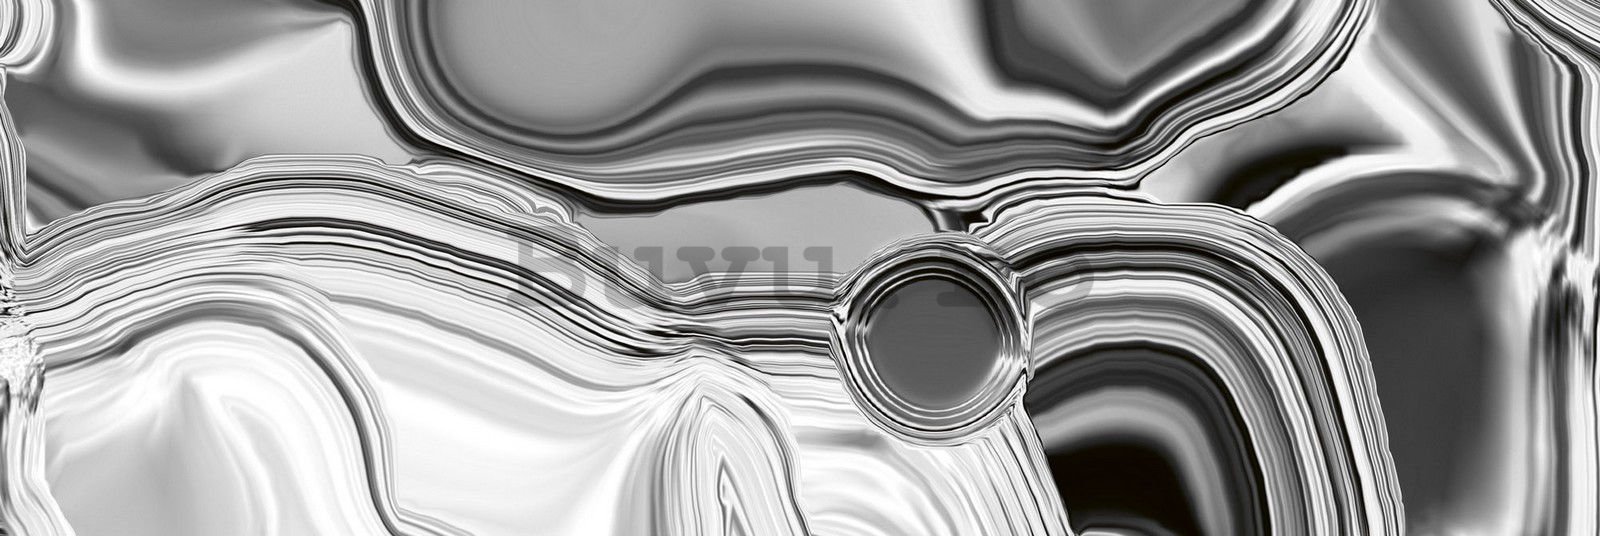 Tapet autoadeziv lavabil pentru bucătărie - Căptușeală de argint lichid, 180x60 cm